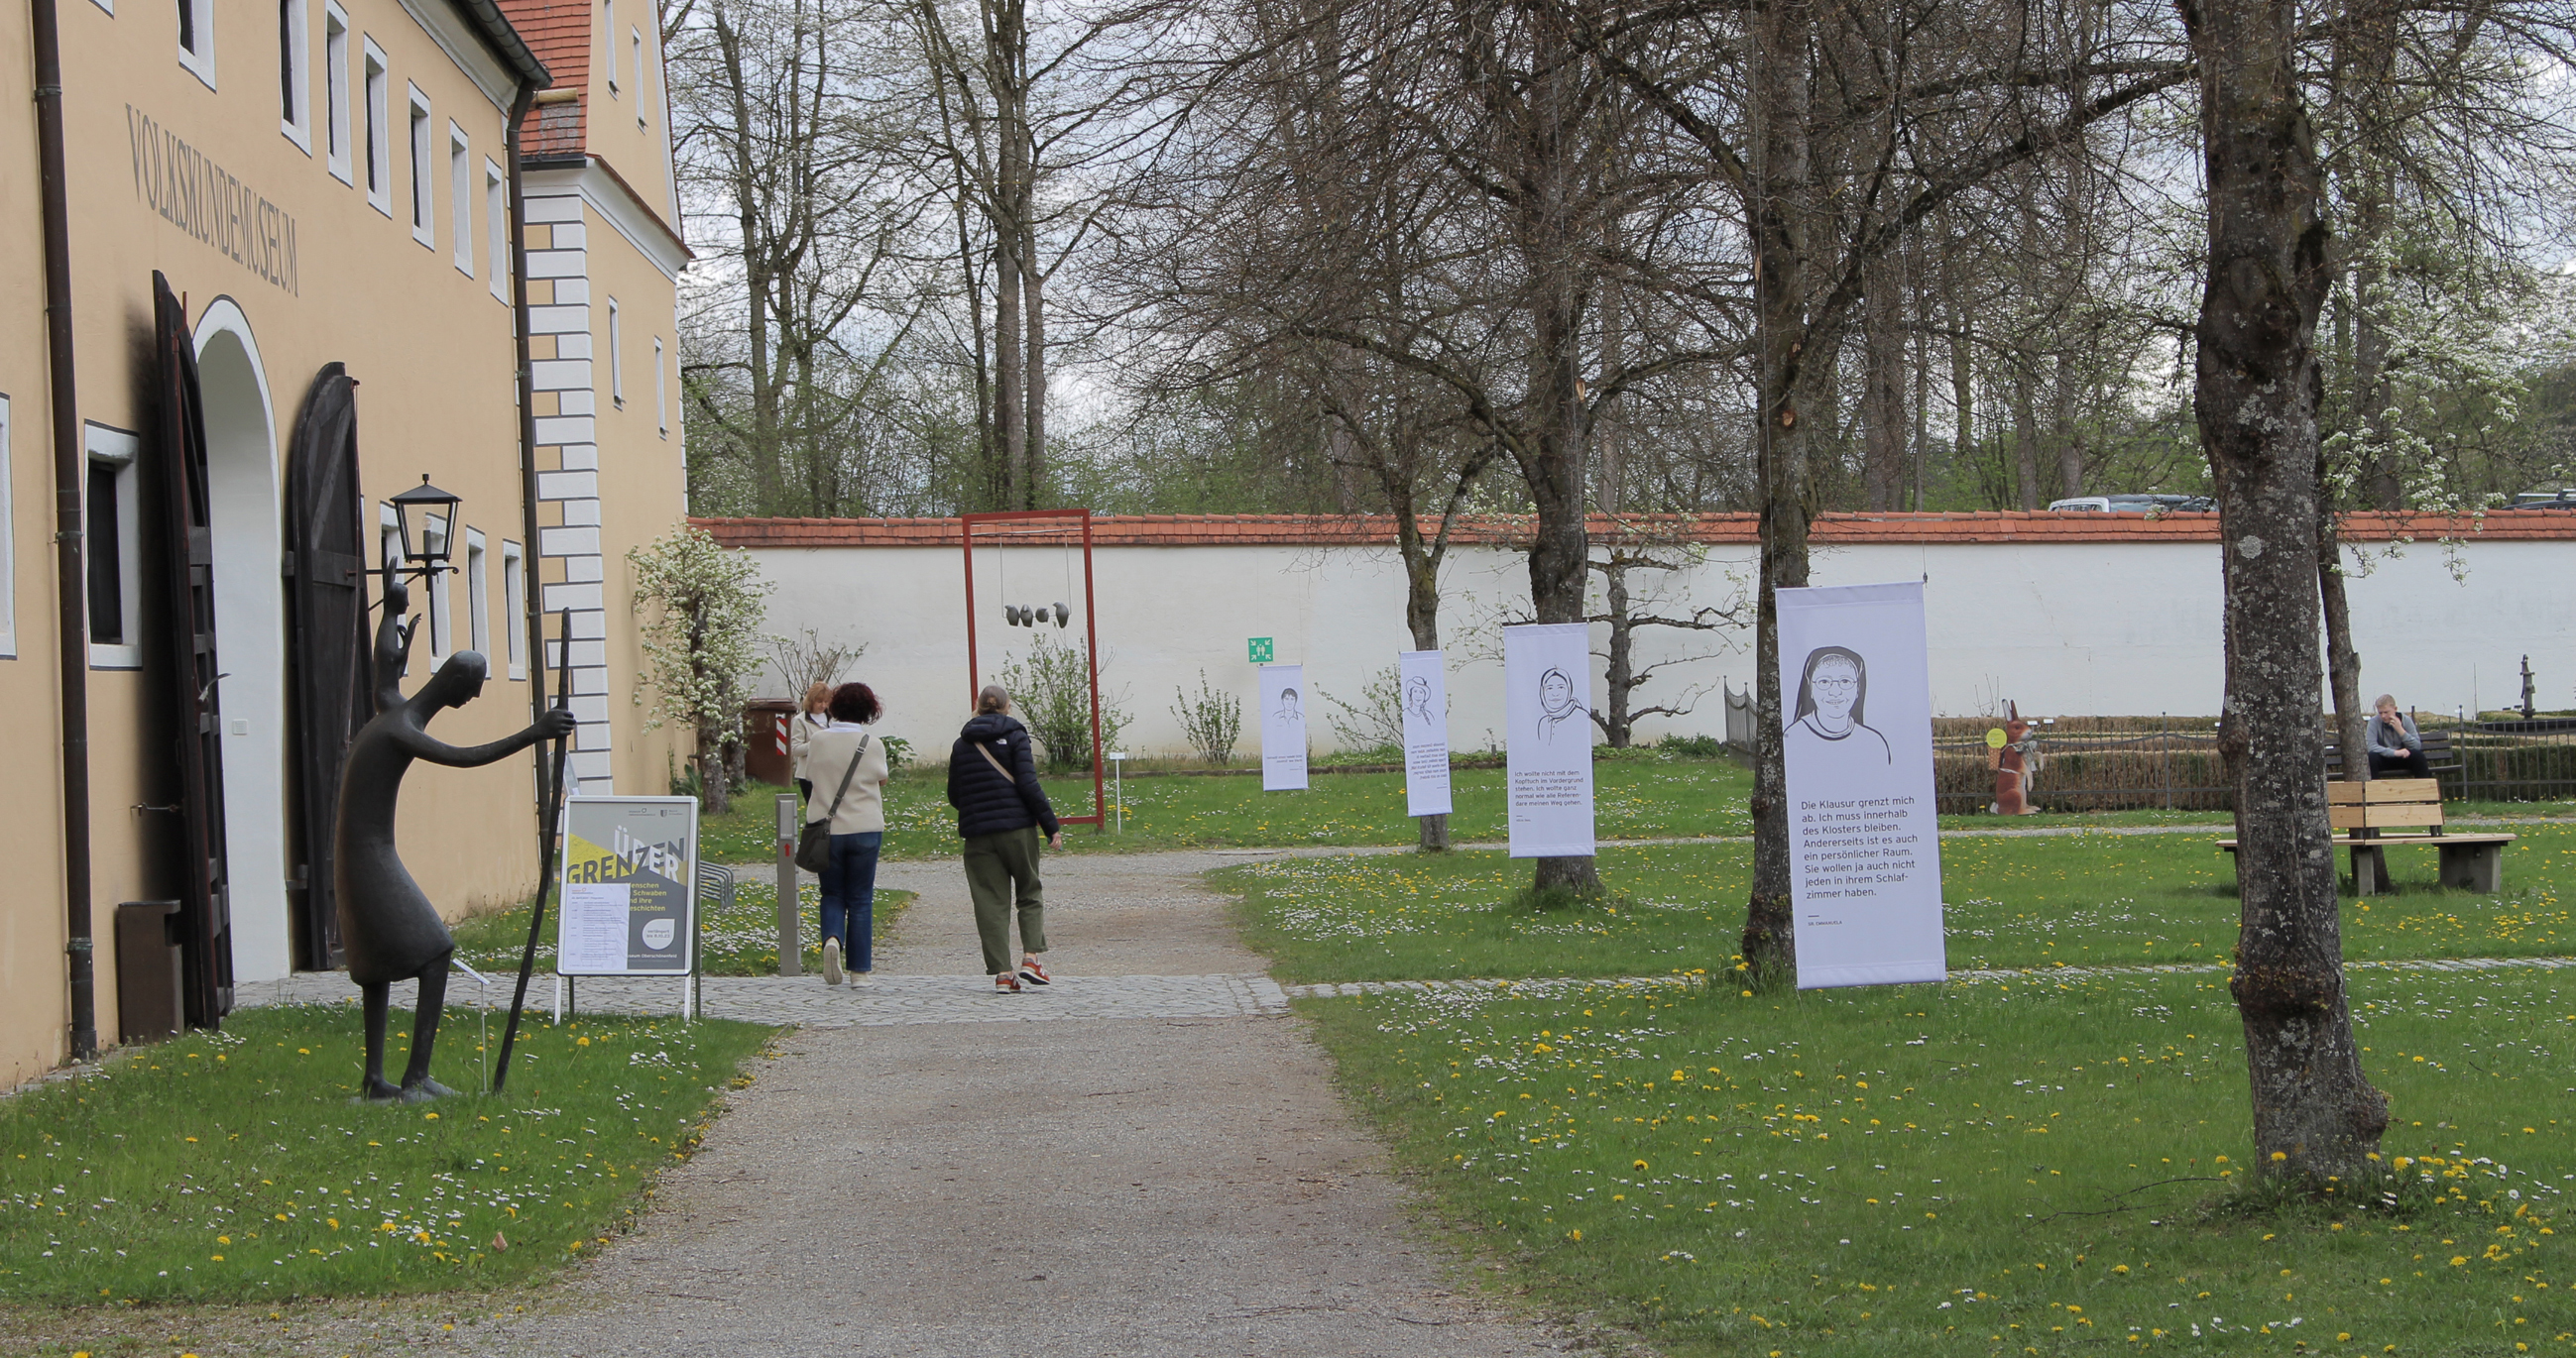 Bäume mit weißen Fahnen mit Portraits der Ausstellungs-Protagonisten